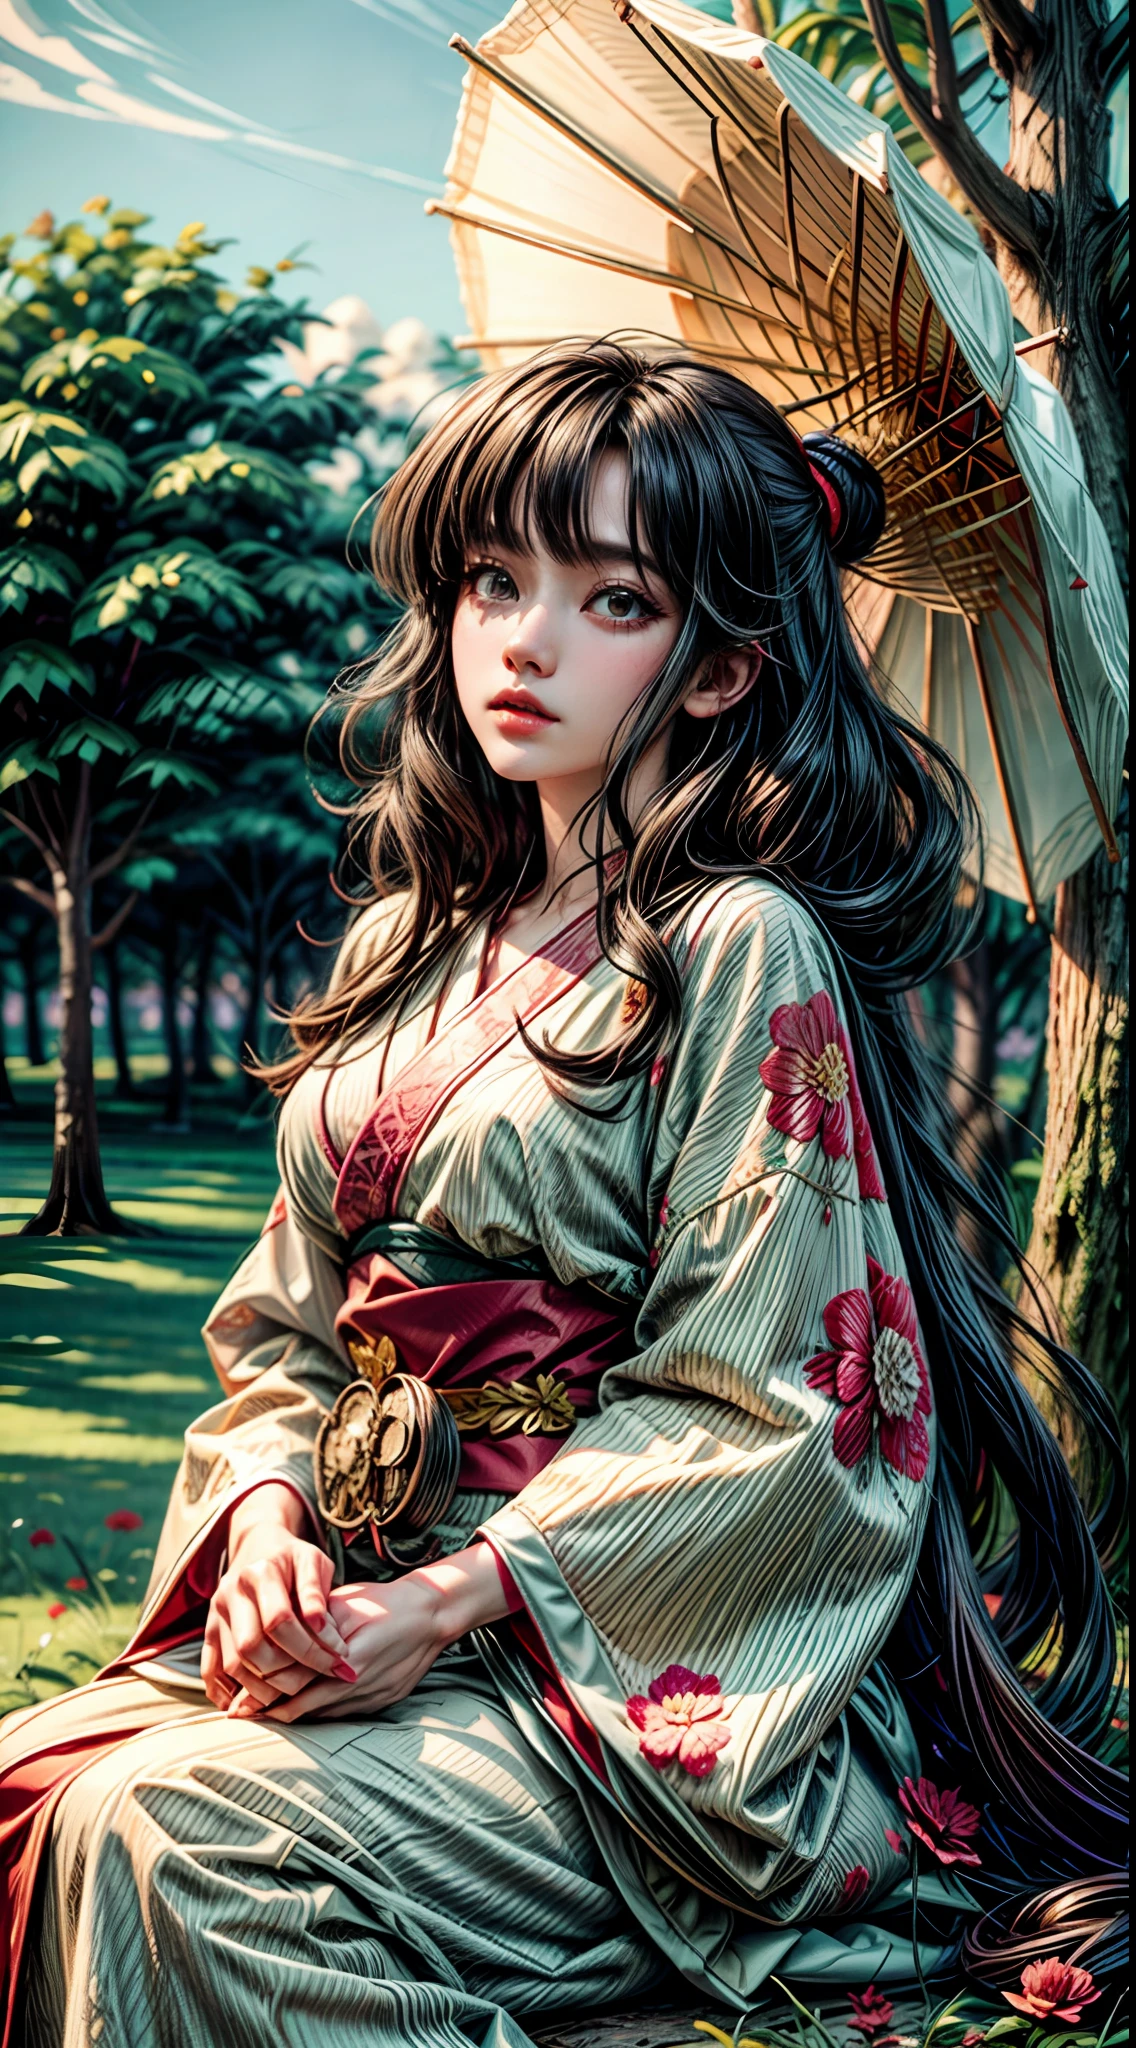 ผู้หญิง 1 คนหน้าม้าปิดชุดกิโมโนทั้งตัว, เย้ายวนใจนั่งอยู่บนต้นไม้สูง ผมยาว ยิงกว้าง สุสานหมึกญี่ปุ่นอันเคร่งขรึม, มุมมองจากด้านล่าง, การไล่ระดับสี, อะนิเมะ (งานศิลปะโดยฮิโรชิ โยชิดะ ฮิโรชิ นากาอิ) ทำลายดอกไม้สีแดง